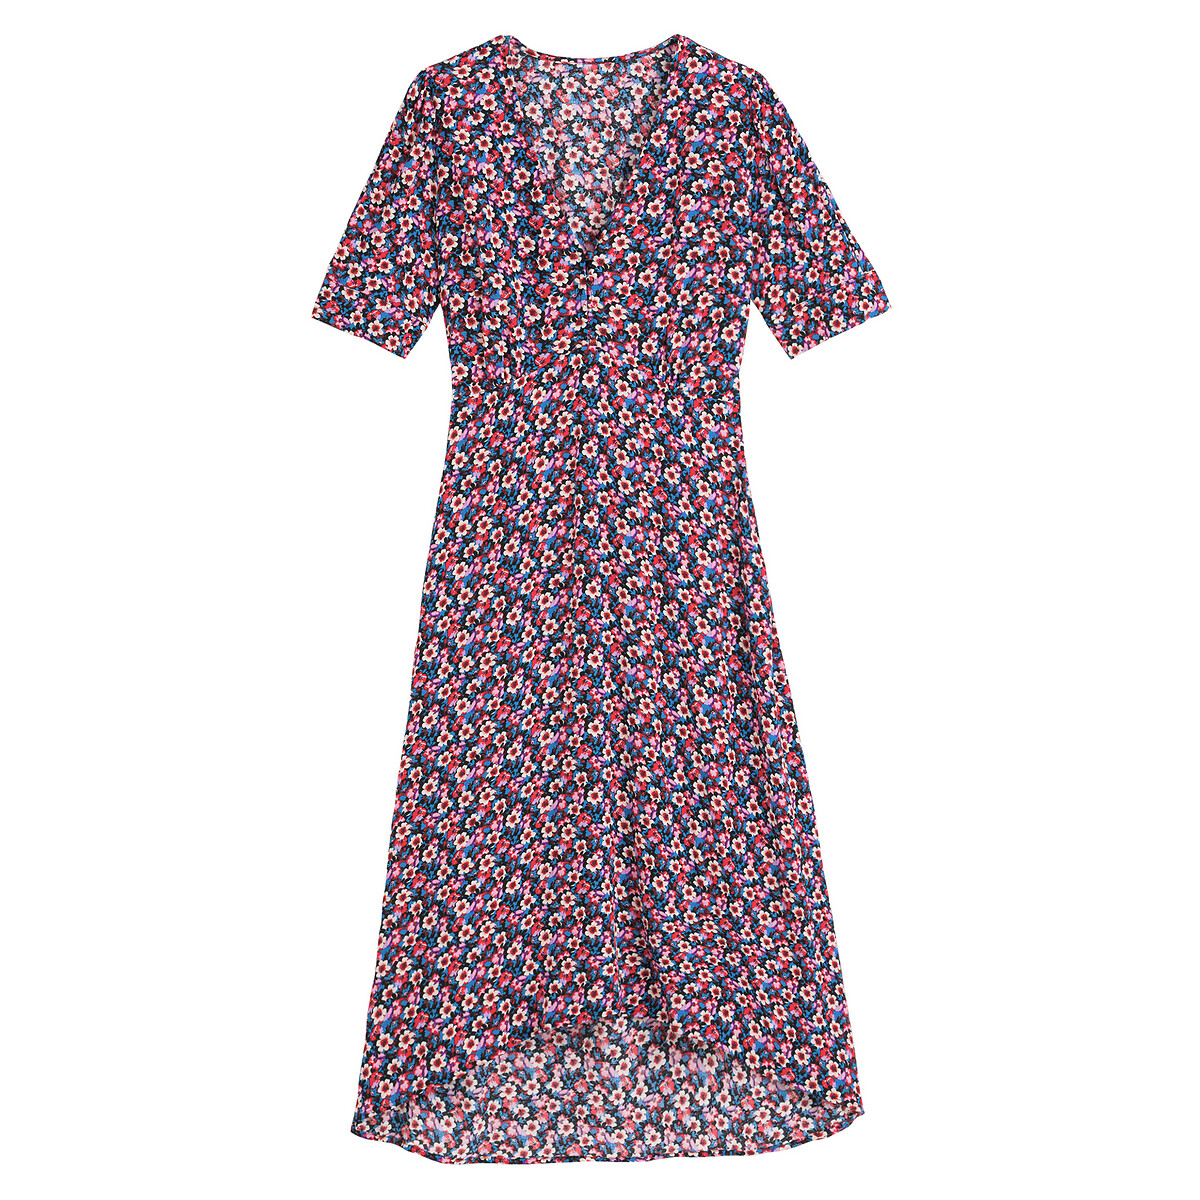 Платье LaRedoute С V-образным вырезом короткие рукава и цветочный принт 46 другие, размер 46 - фото 5